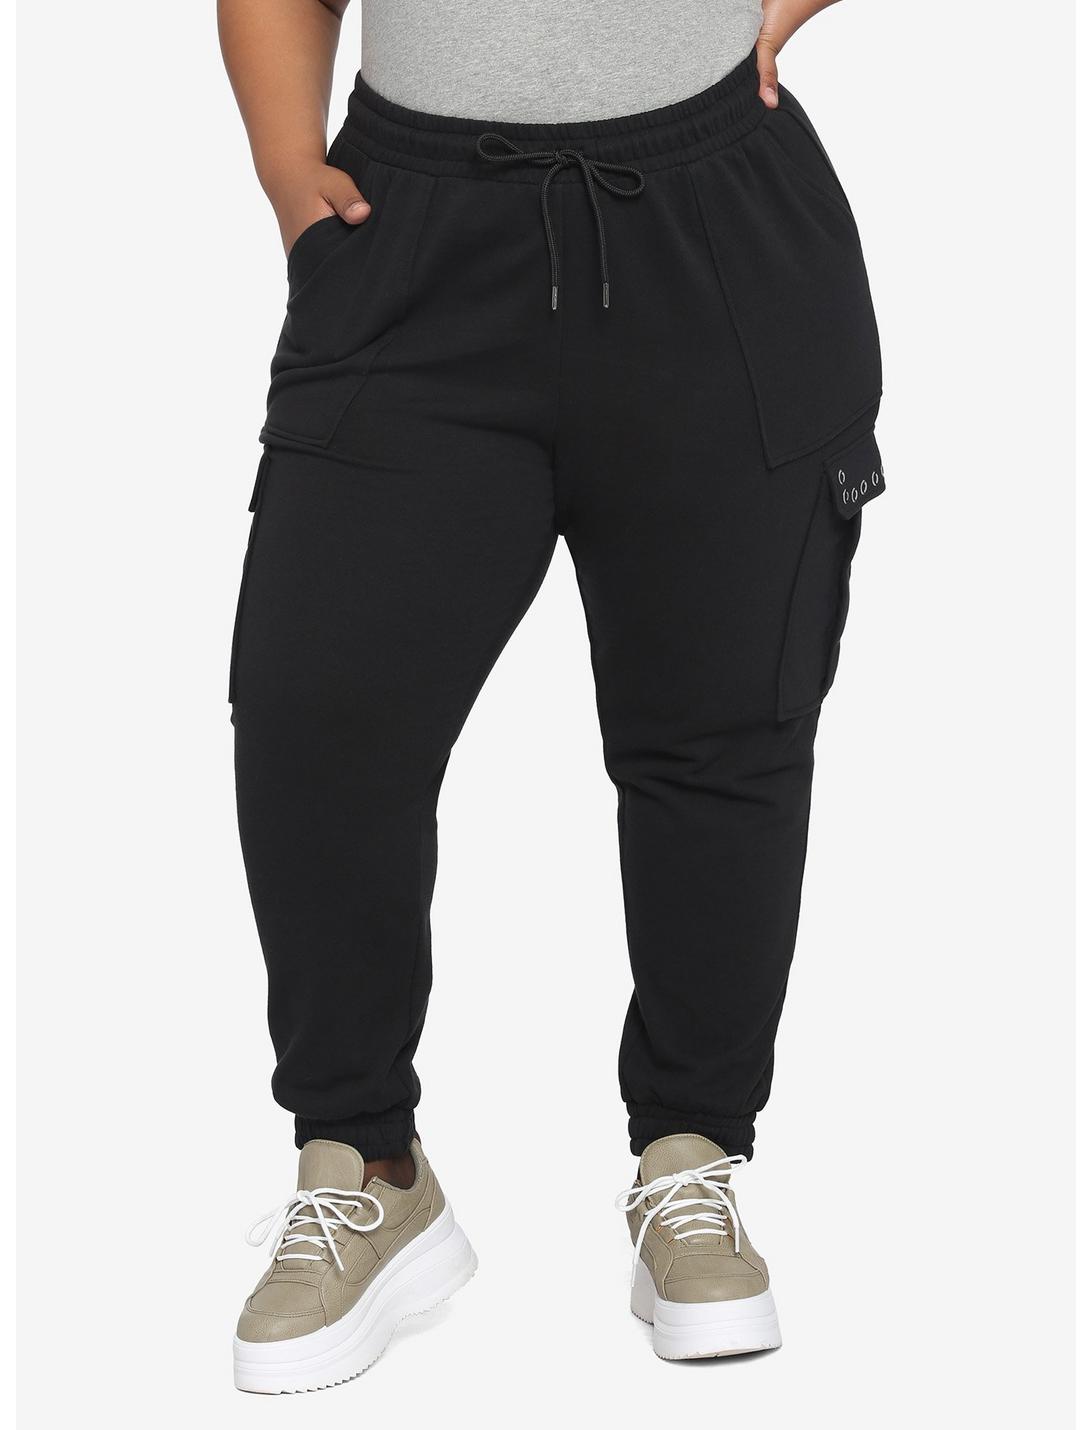 Black Grommet Jogger Pants Plus Size, BLACK, hi-res